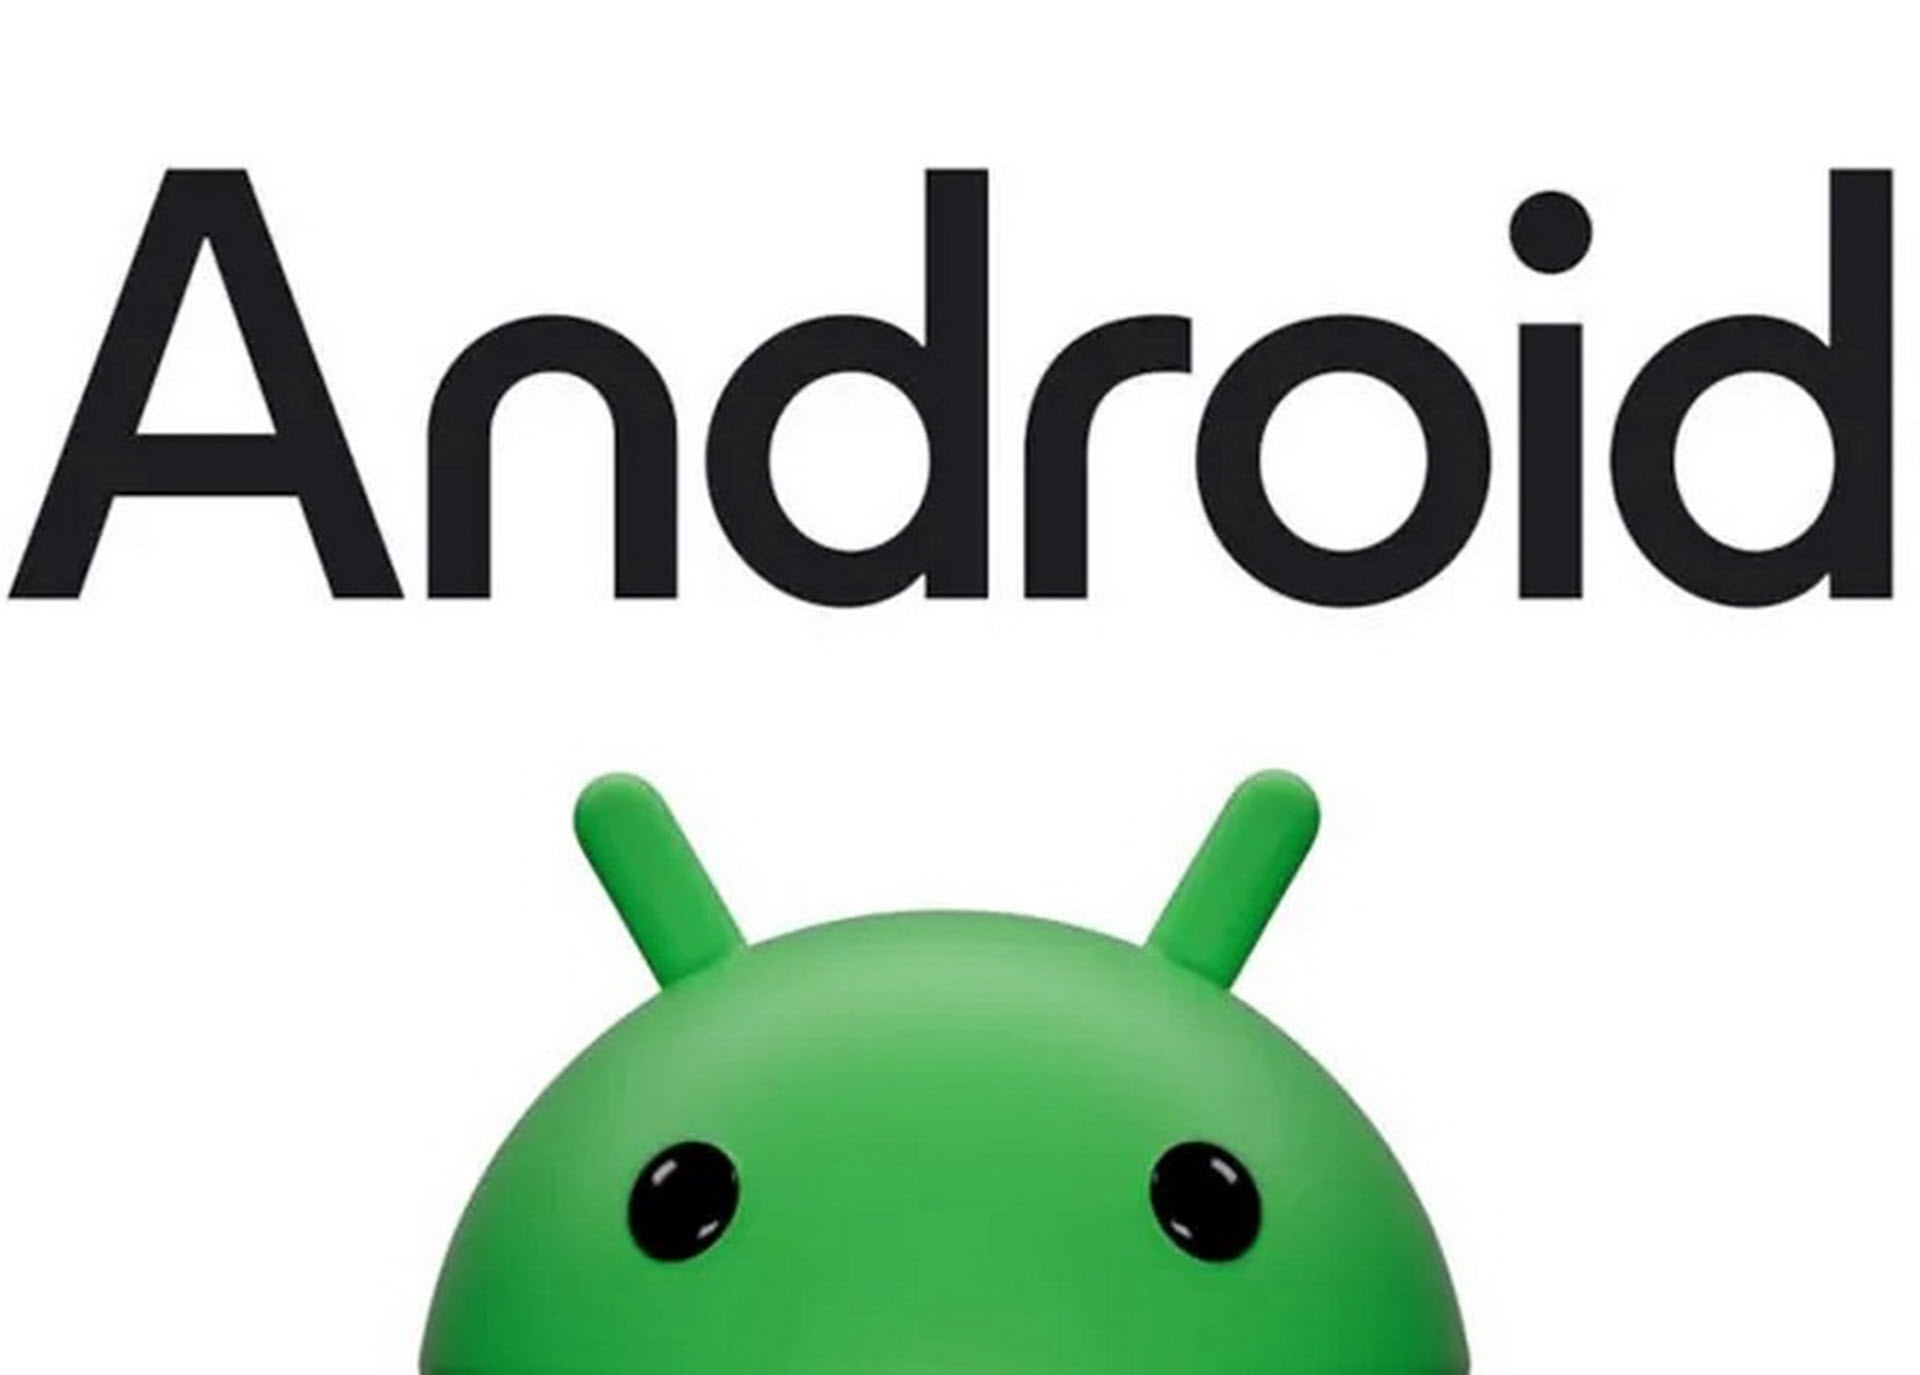 Η Google ανανεώνει το Android avatar και το κάνει πιο δυναμικό και παιχνιδιάρικο